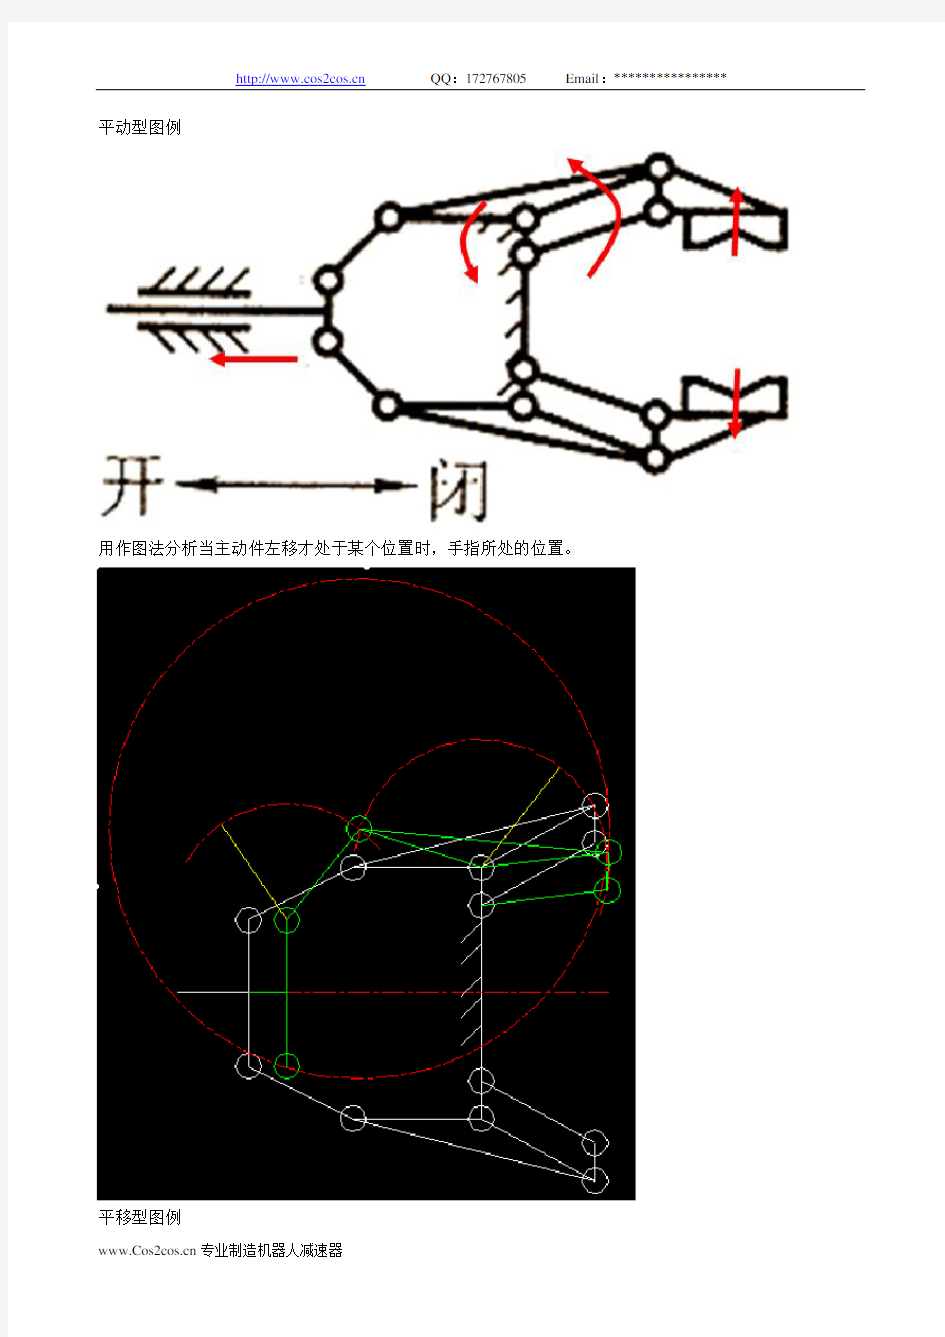 机器人手部结构详解及大量结构图